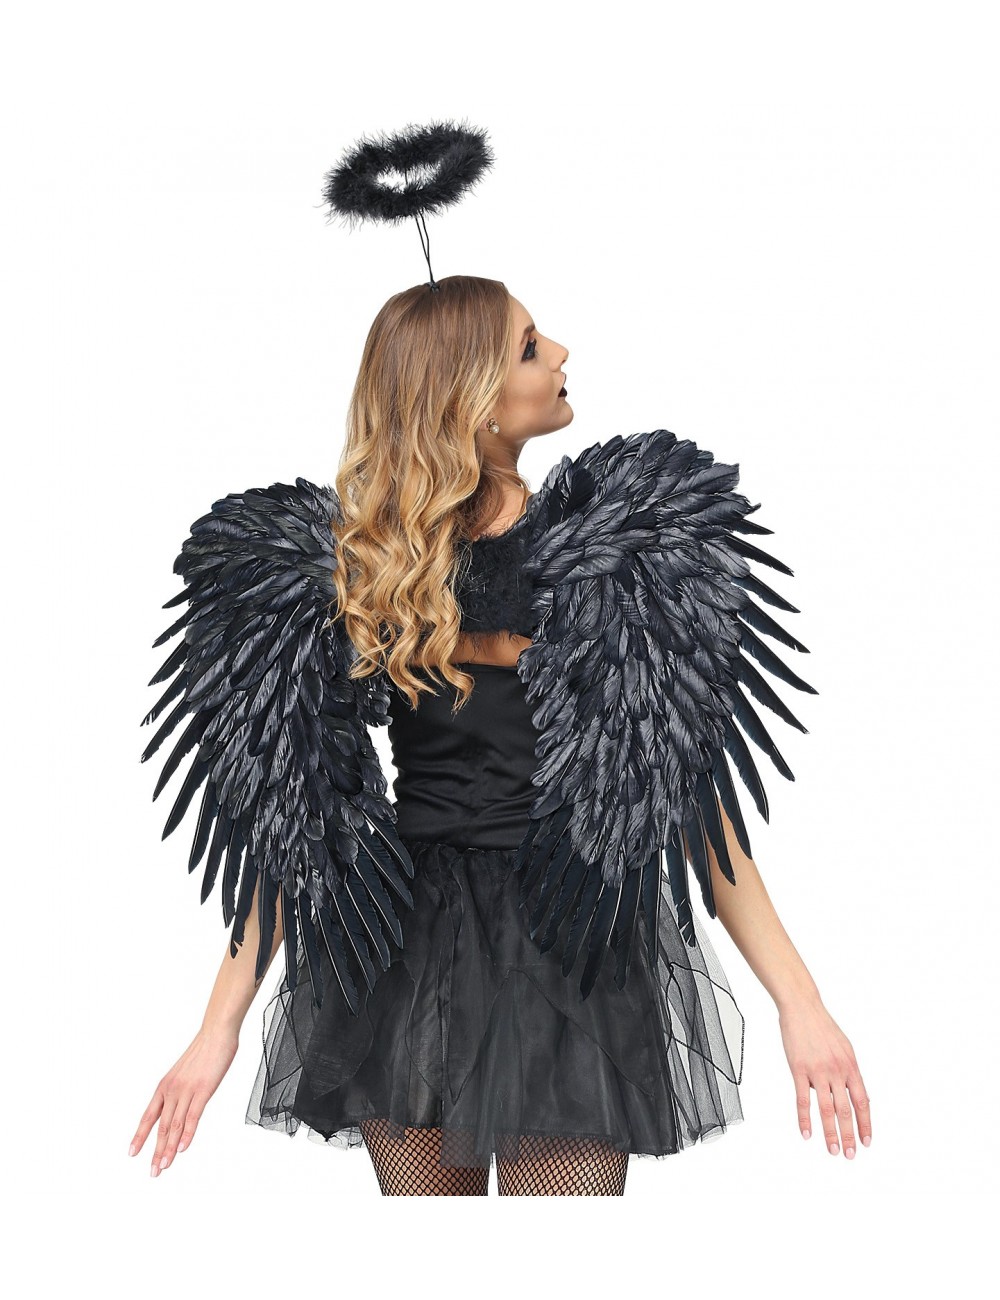 Extra große schwarze Flügel Kostüm bewegliche flexible Flügel für